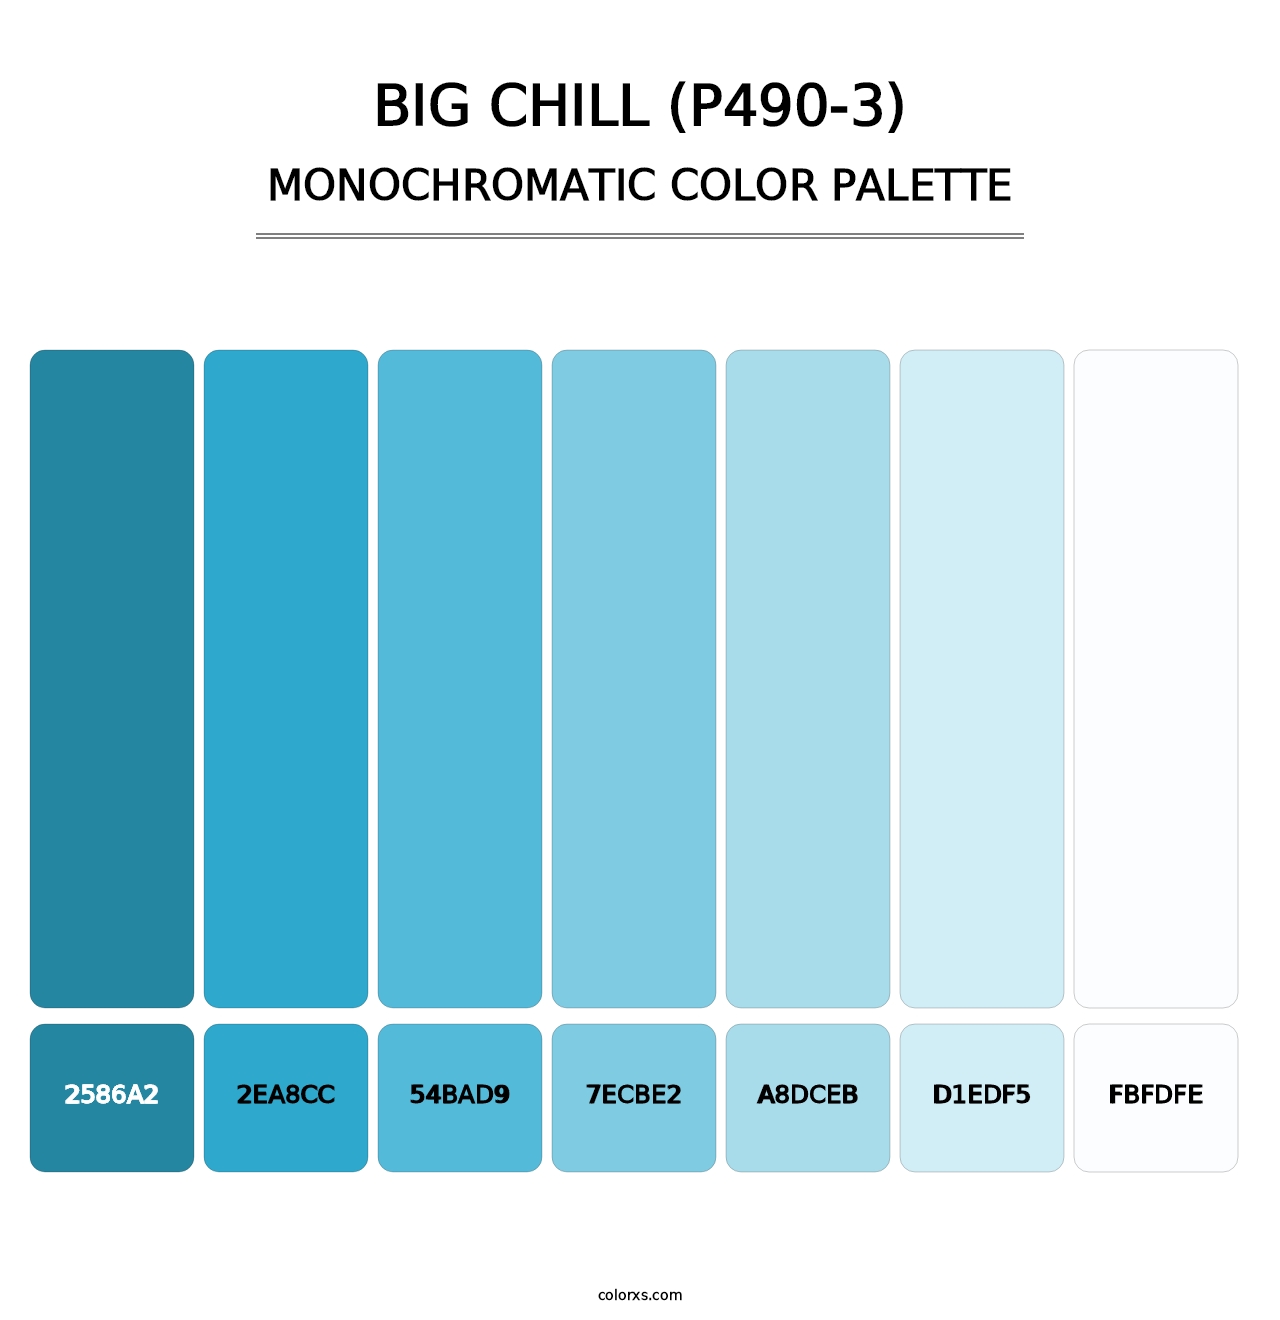 Big Chill (P490-3) - Monochromatic Color Palette